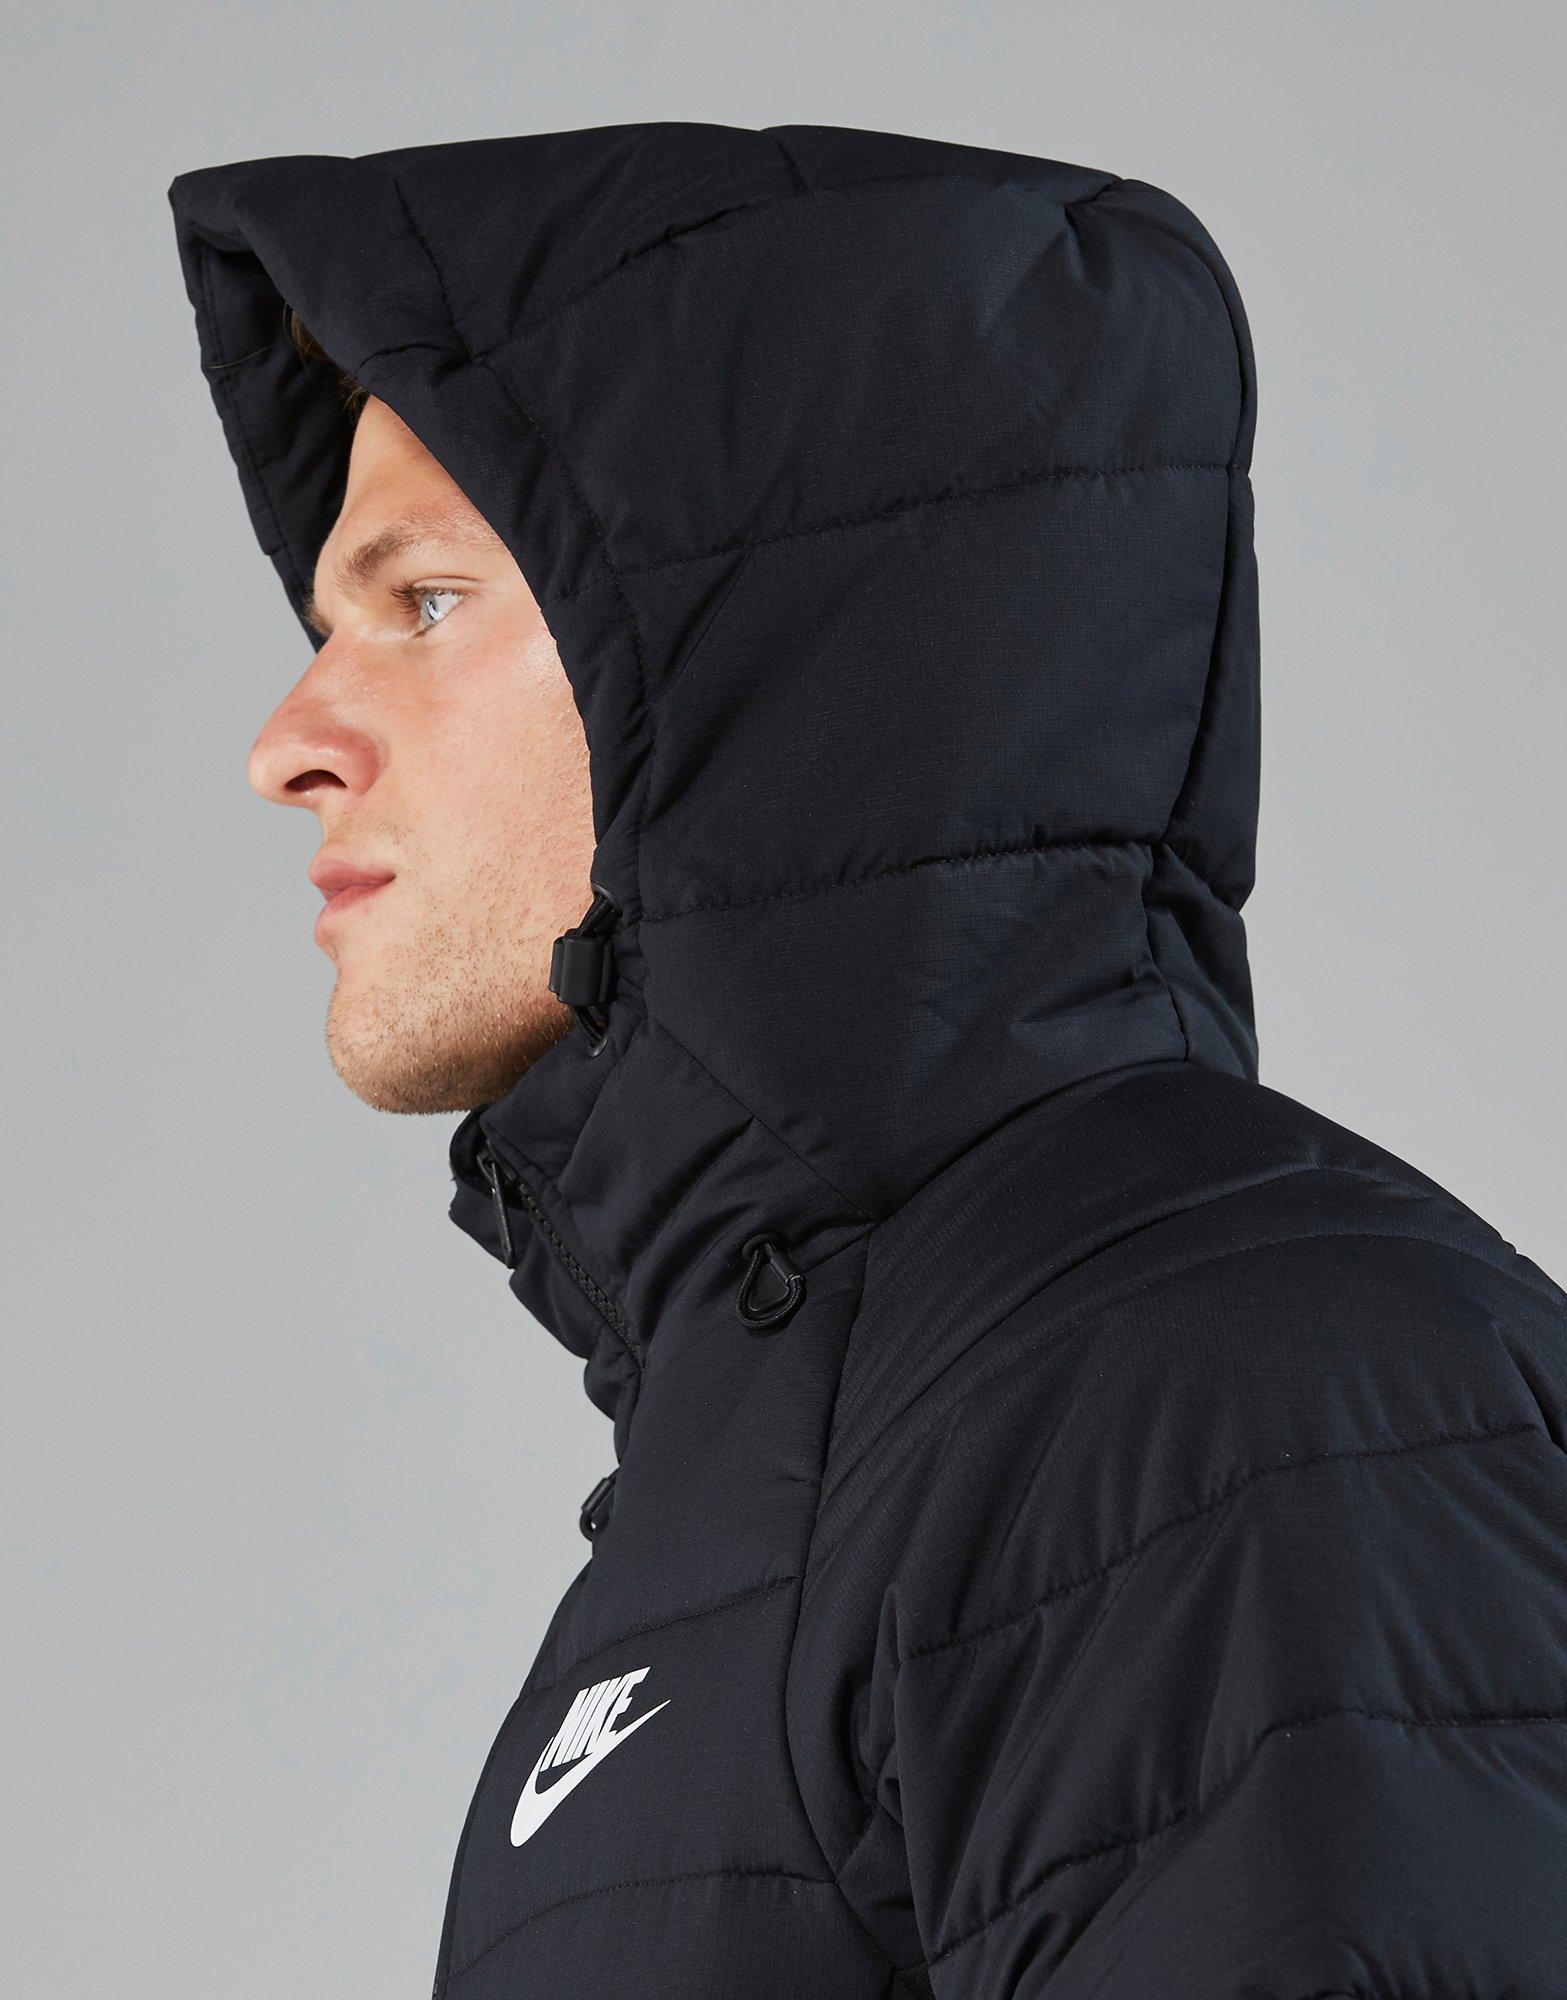 Nike Synthetic Sportswear Hooded Down Jacket in Black for Men - Lyst